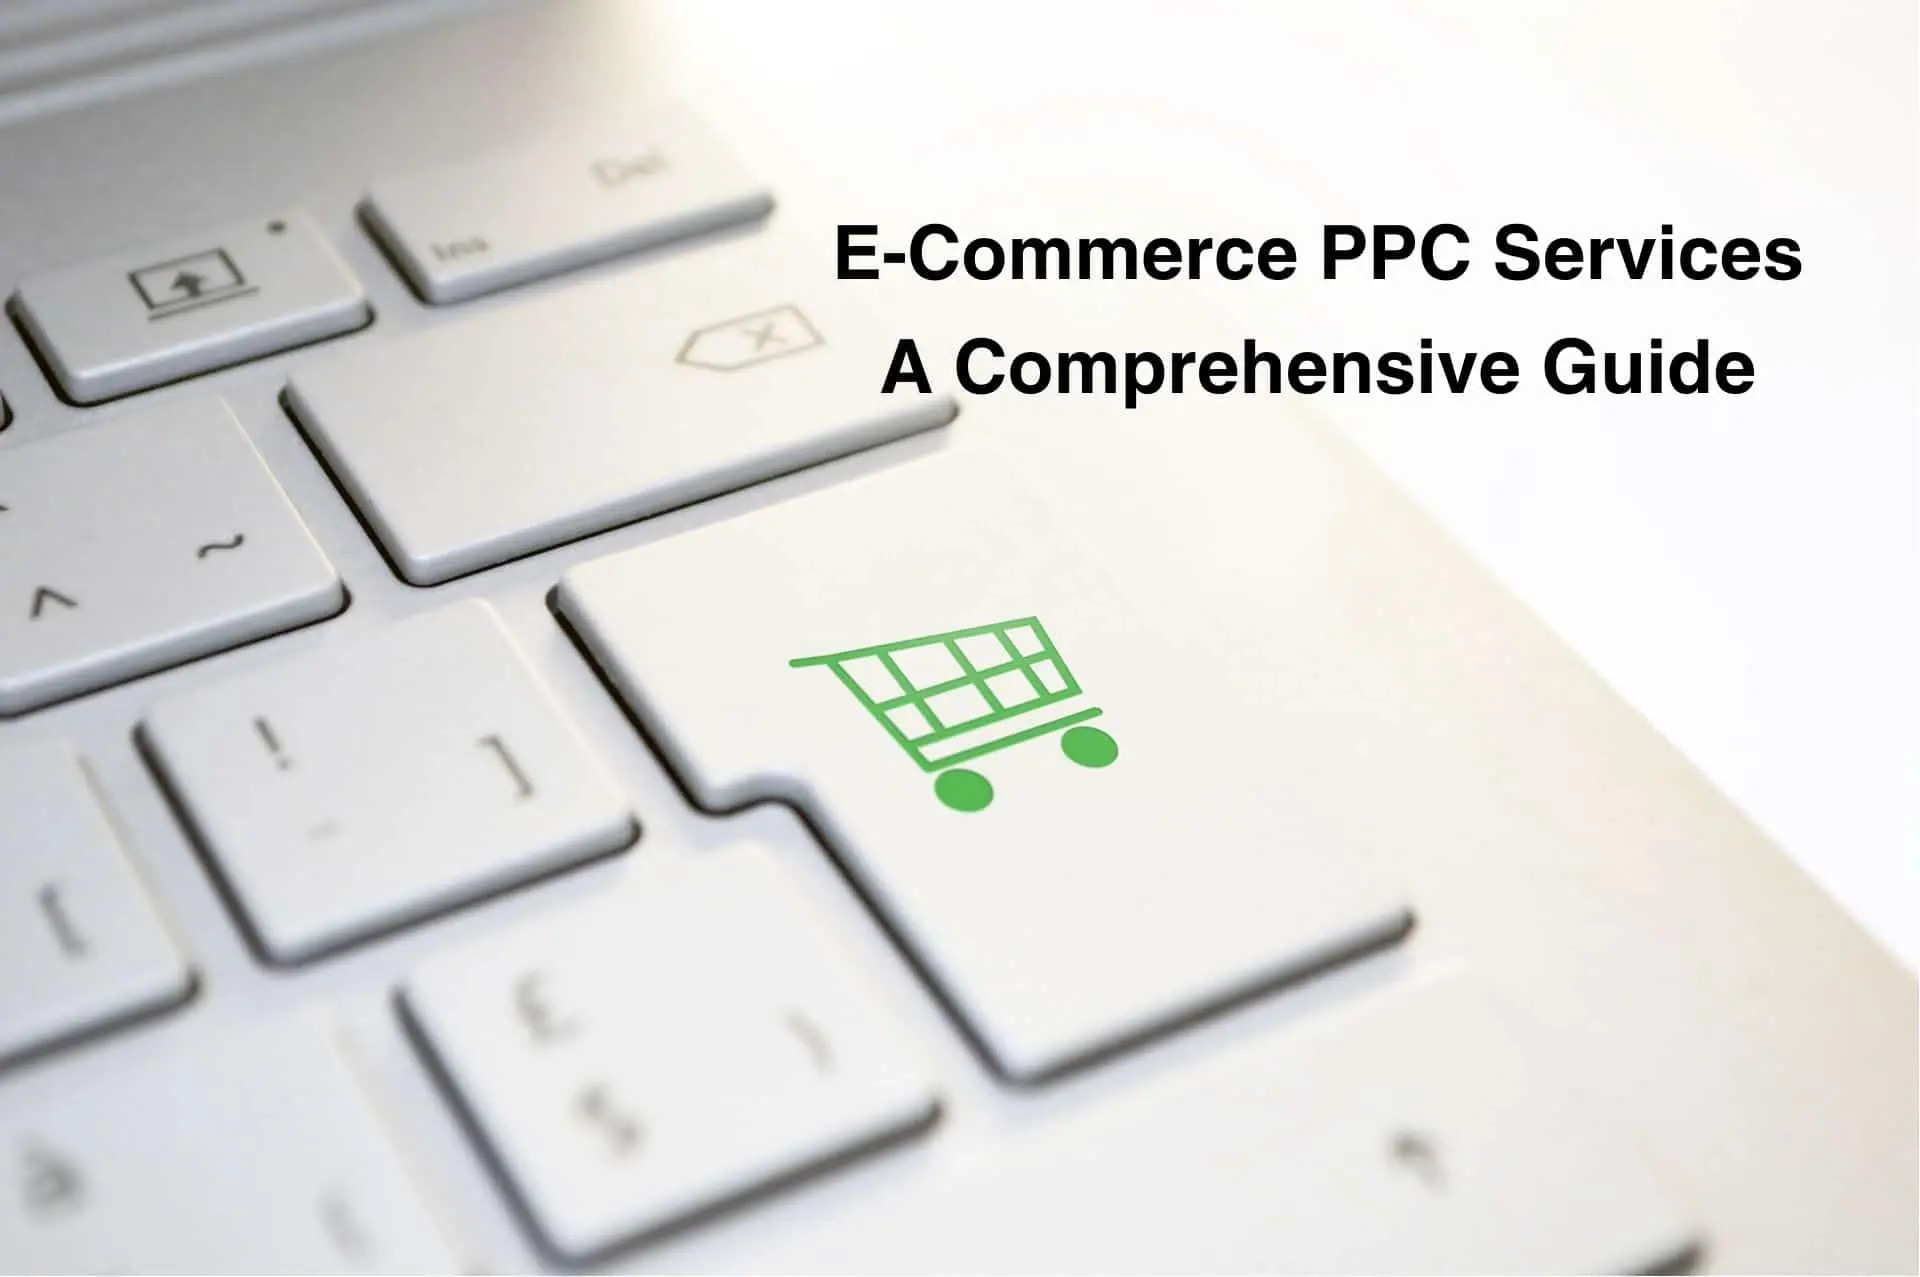 E-Commerce PPC Services